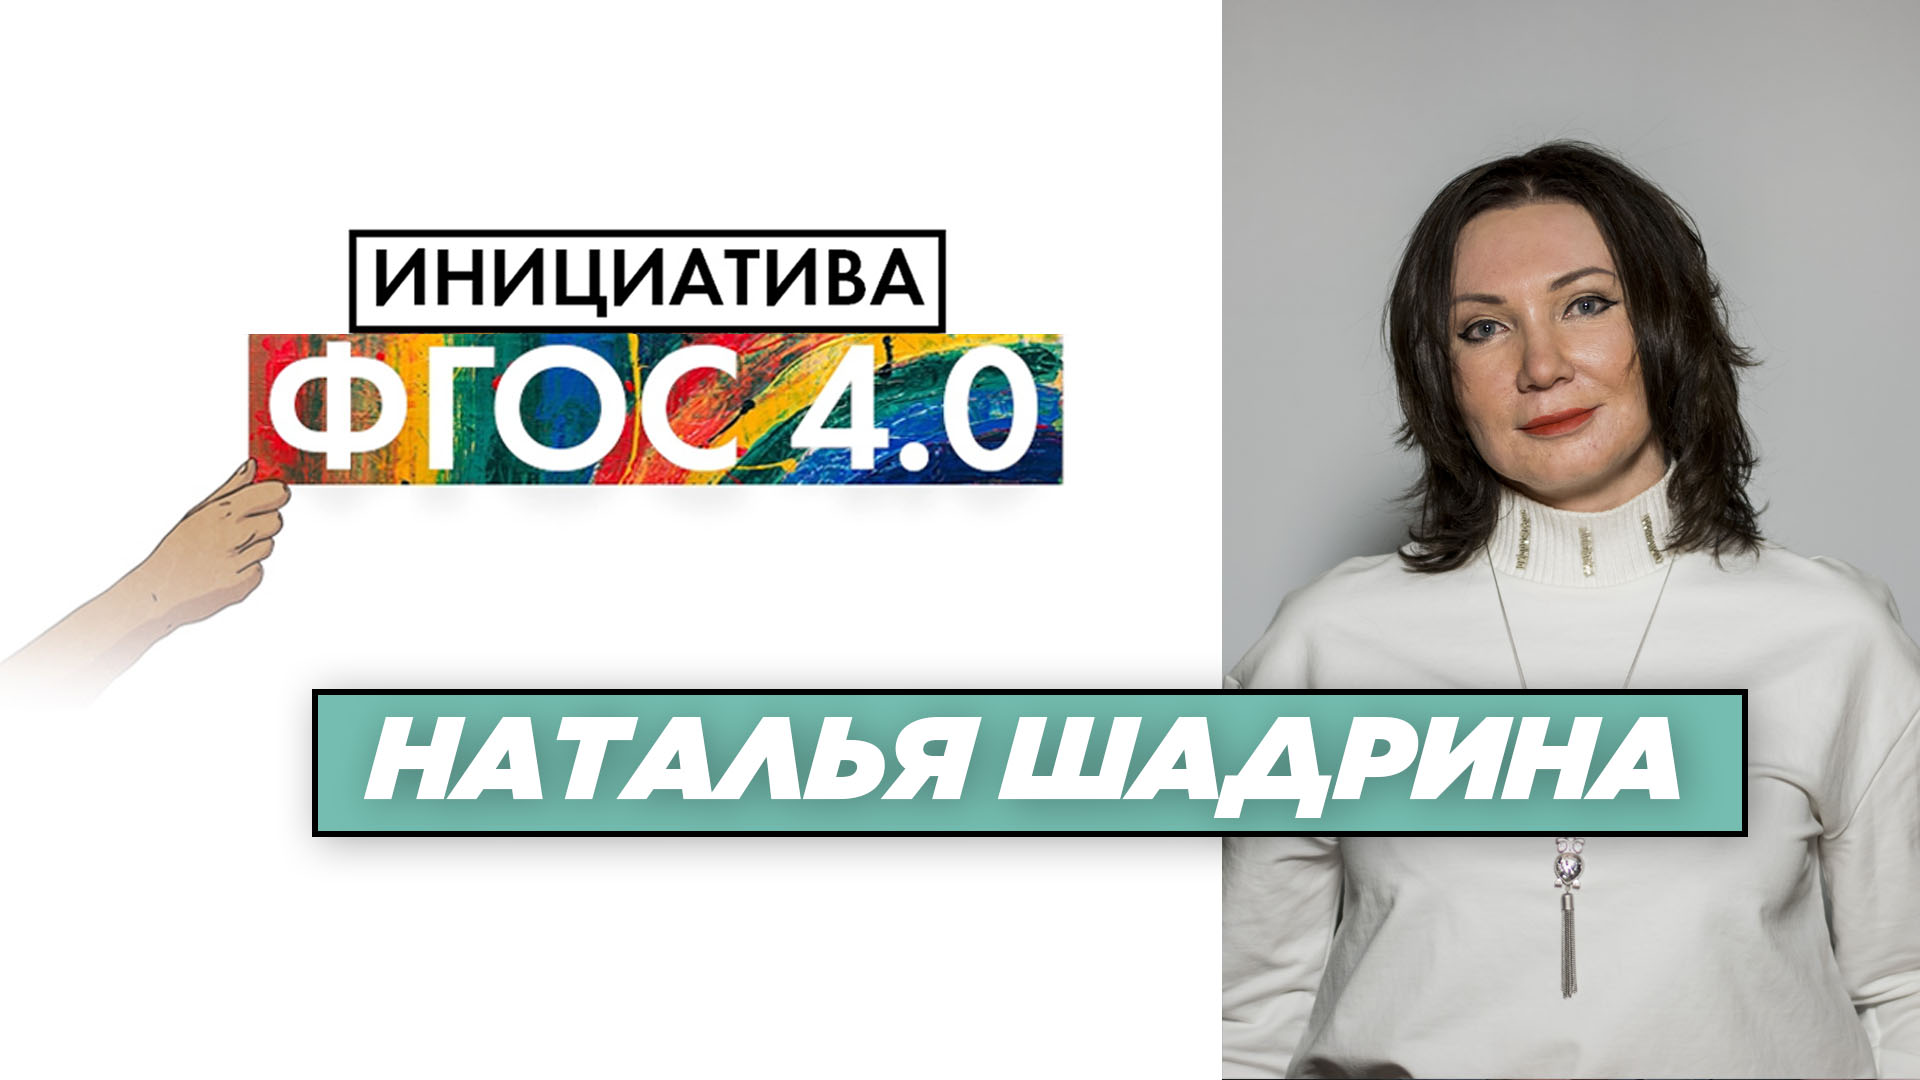 Наталья Шадрина: «Инициатива ФГОС 4.0». Экономика